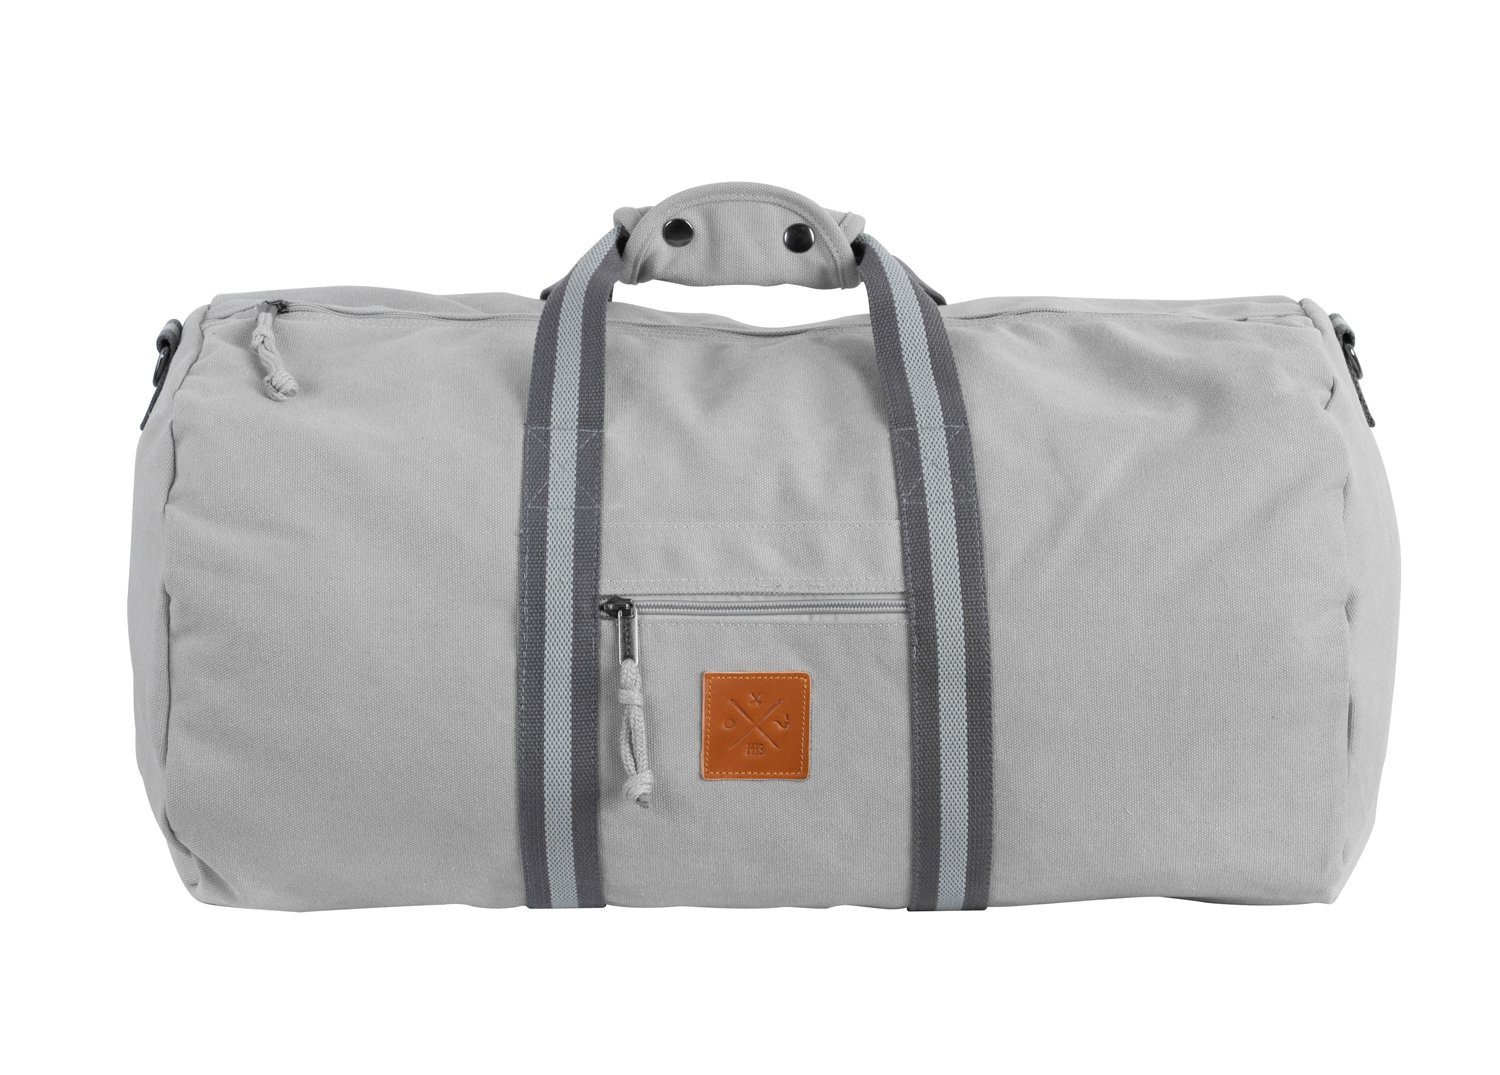 Manufaktur13 Sporttasche Canvas Duffel Bag - Sporttasche, Barrel Bag, Reisetasche, 45L Fassungsvermögen Asphalt